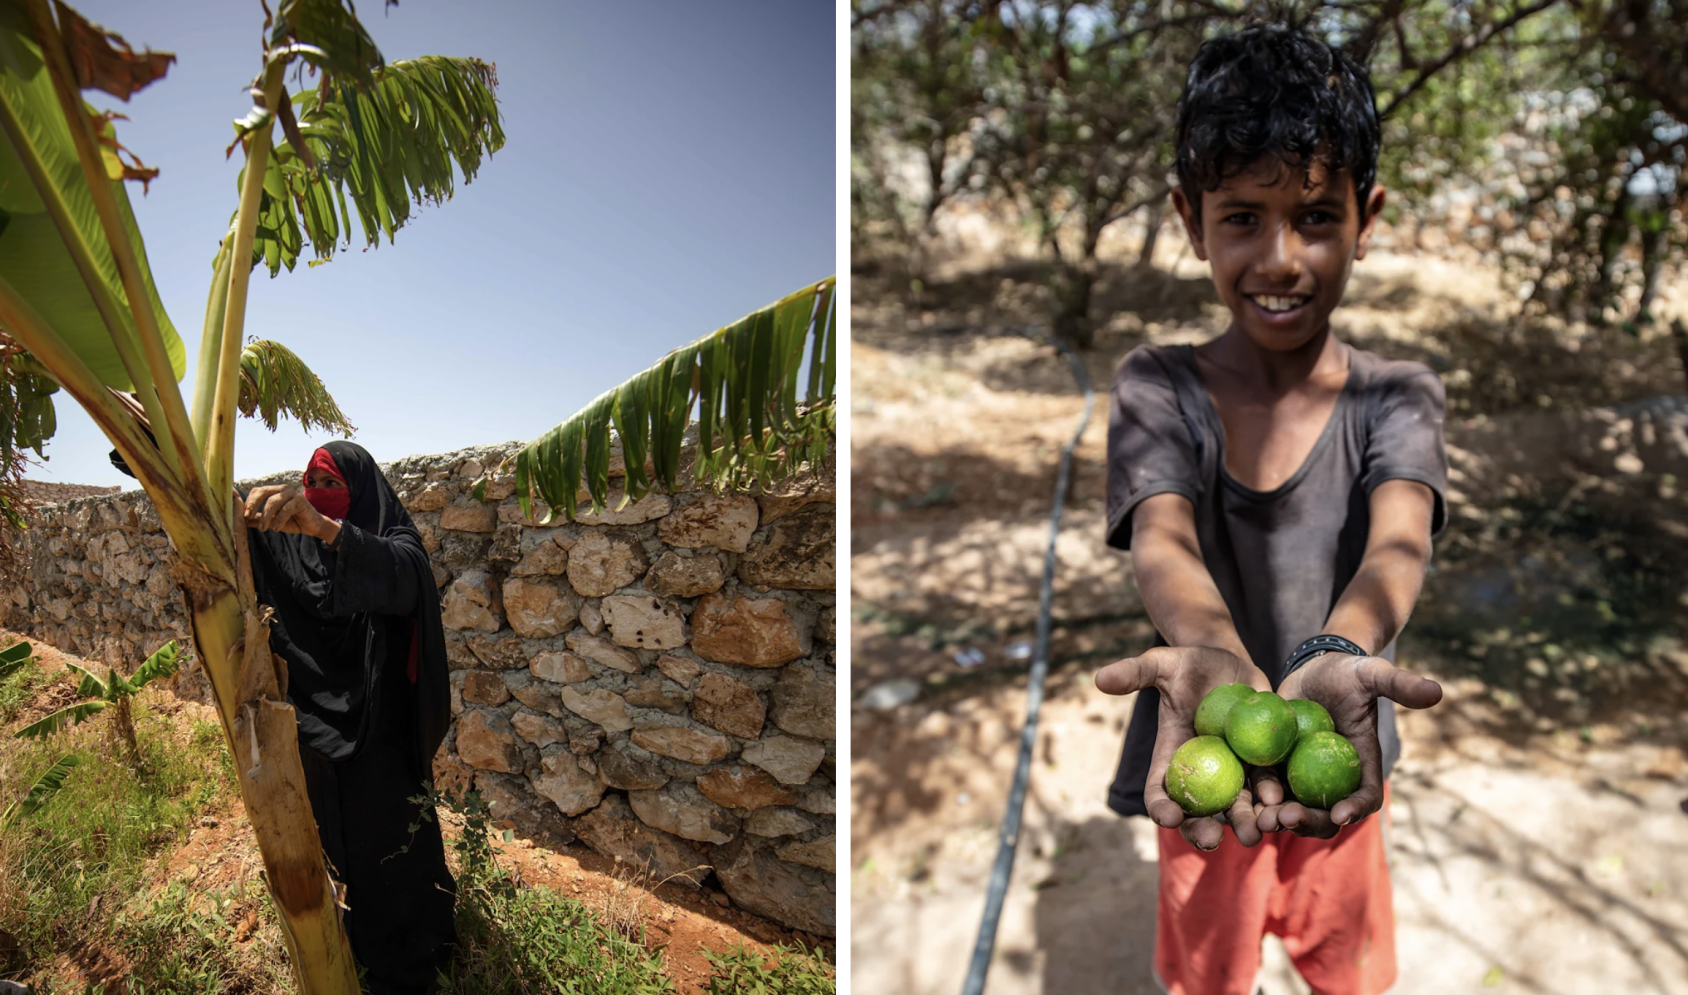 Deux photos juxtaposées : sur celle de gauche, une femme en burka se tient près d'un arbre et, sur la photo de droite, un jeune garçon montre à la caméra les citrons verts qu'il tient dans les mains.